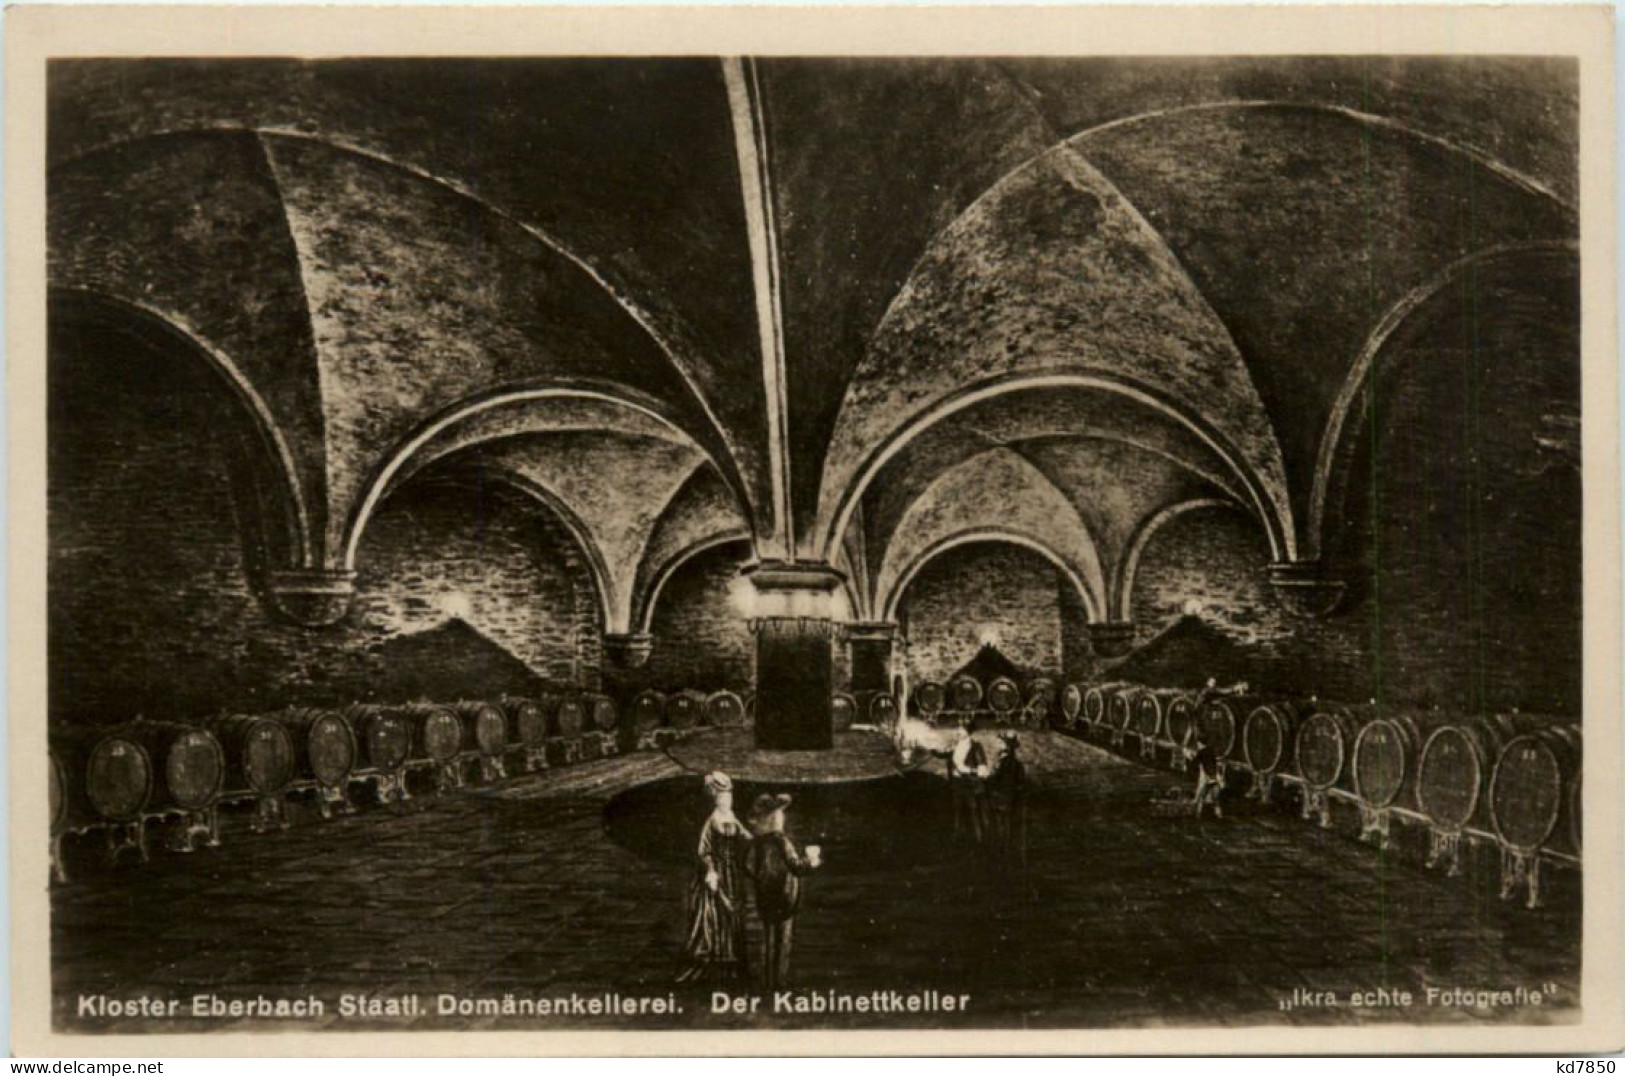 Kloster Eberbach, Staatl. Domänenkellerei, Der Kabinettkeller - Eltville